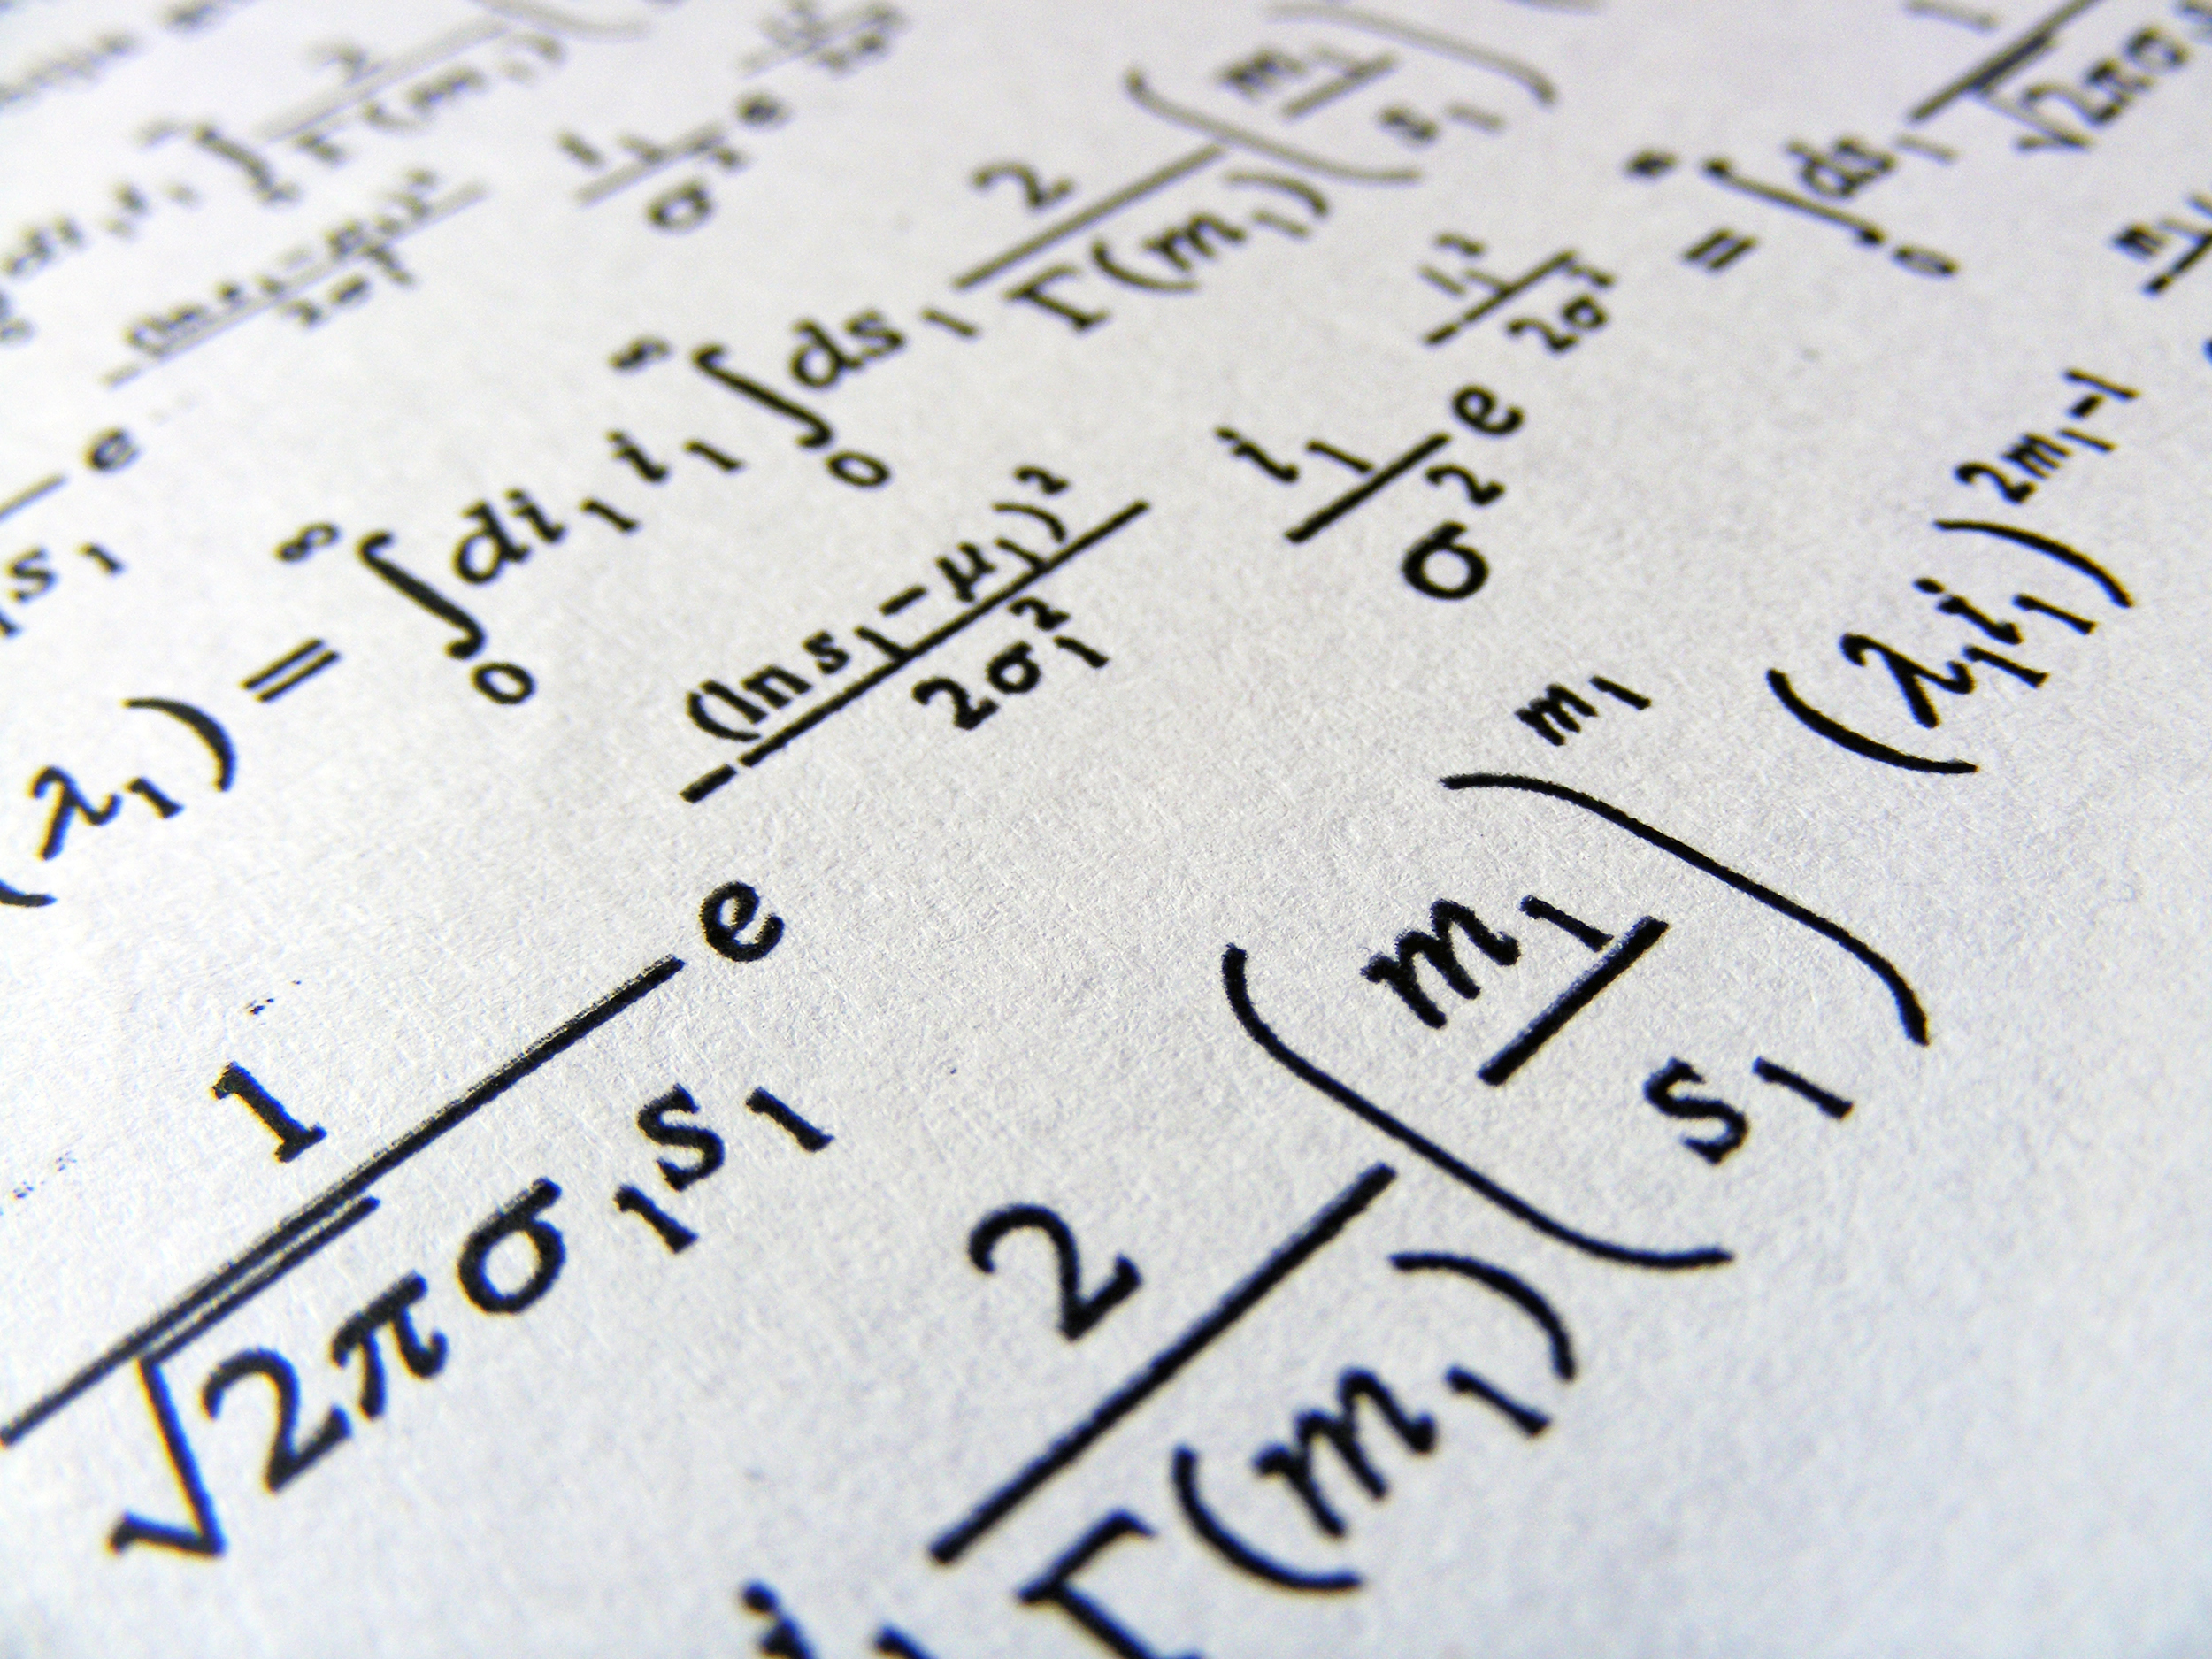 Clases de matemáticas para futuros estudiantes de ingeniería